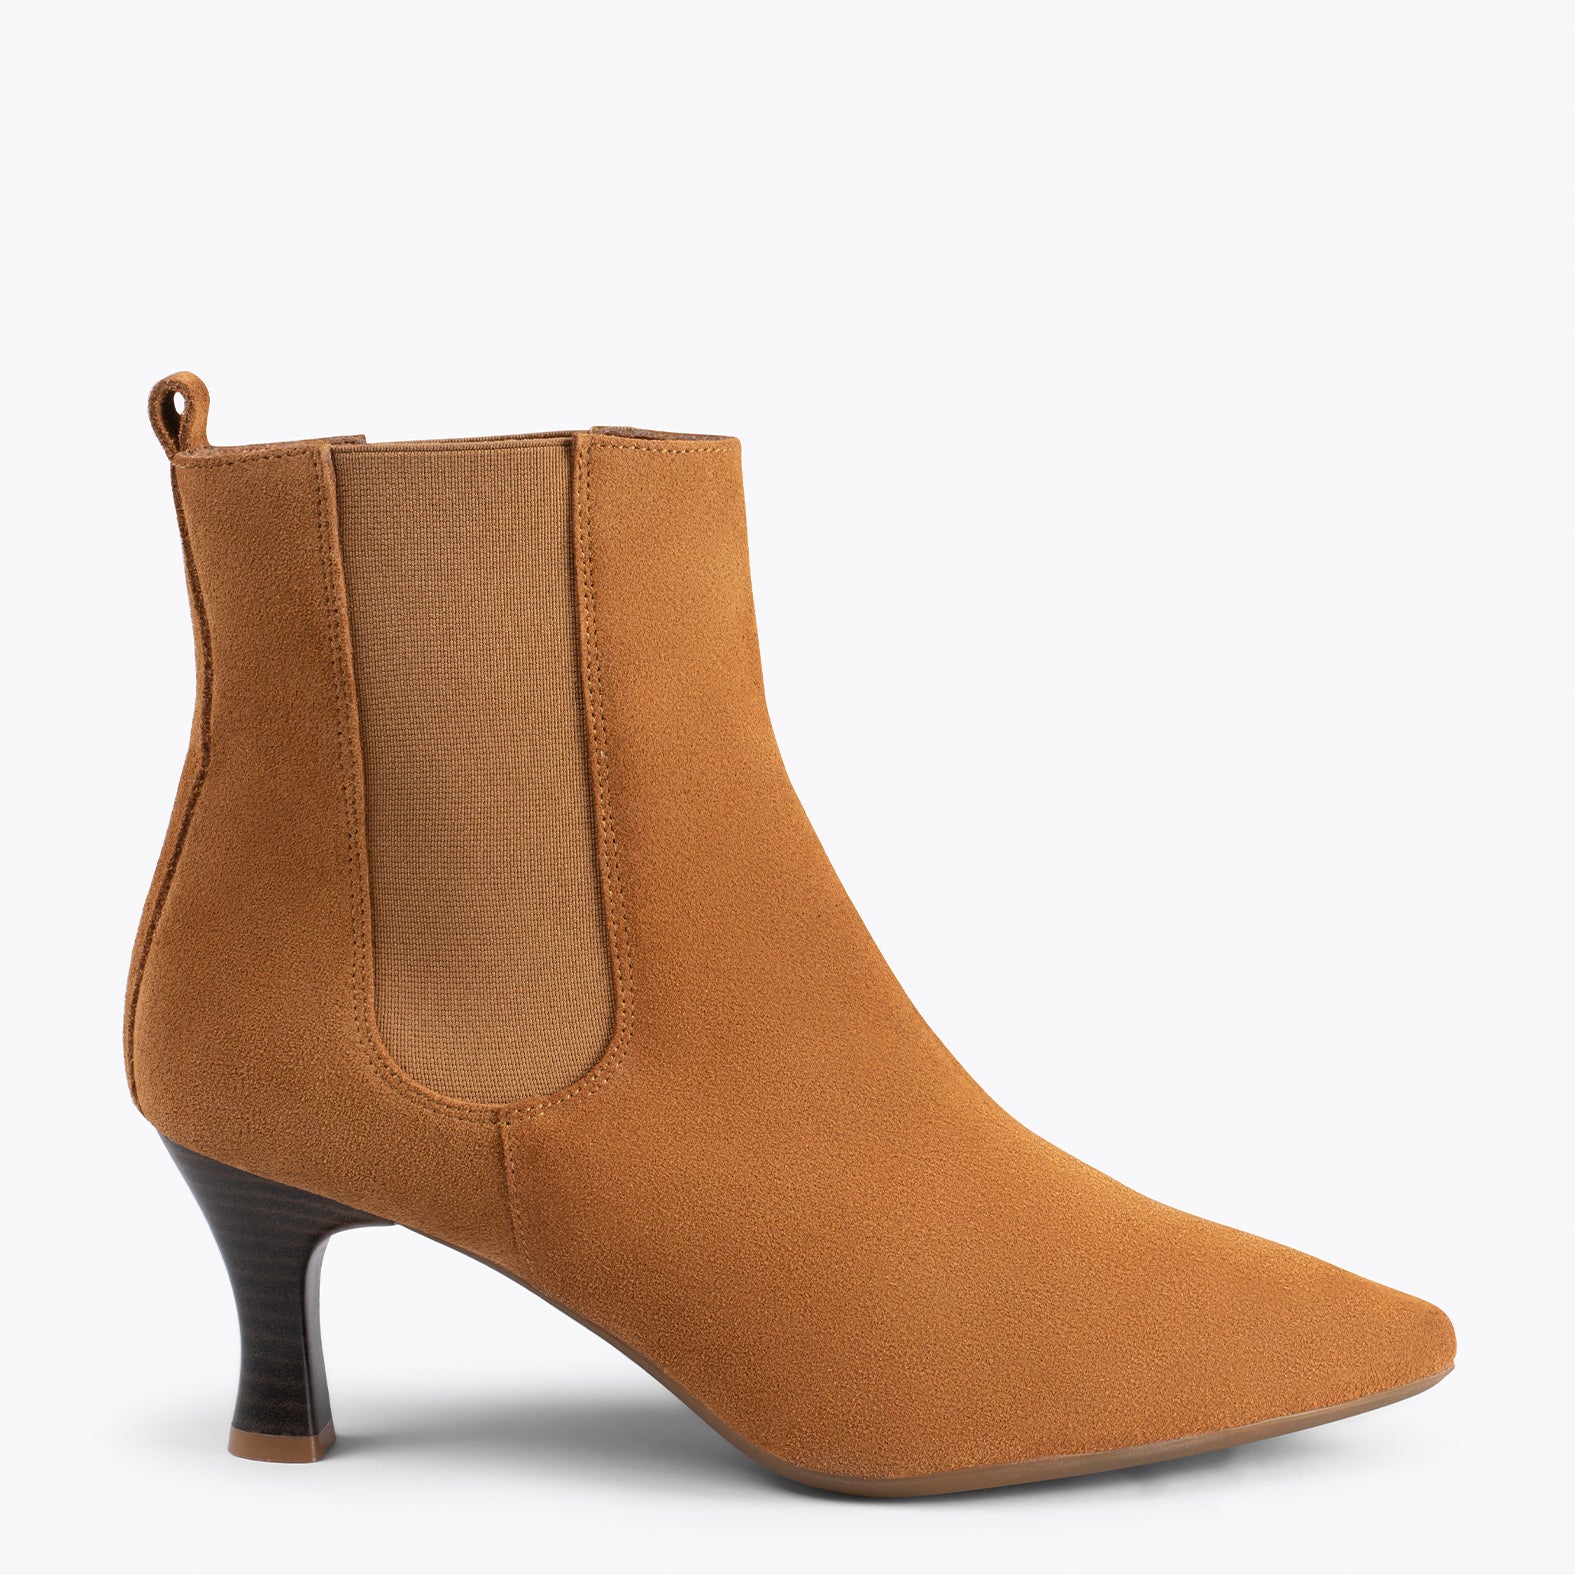 CHIC – CAMEL chelsea high heel booties